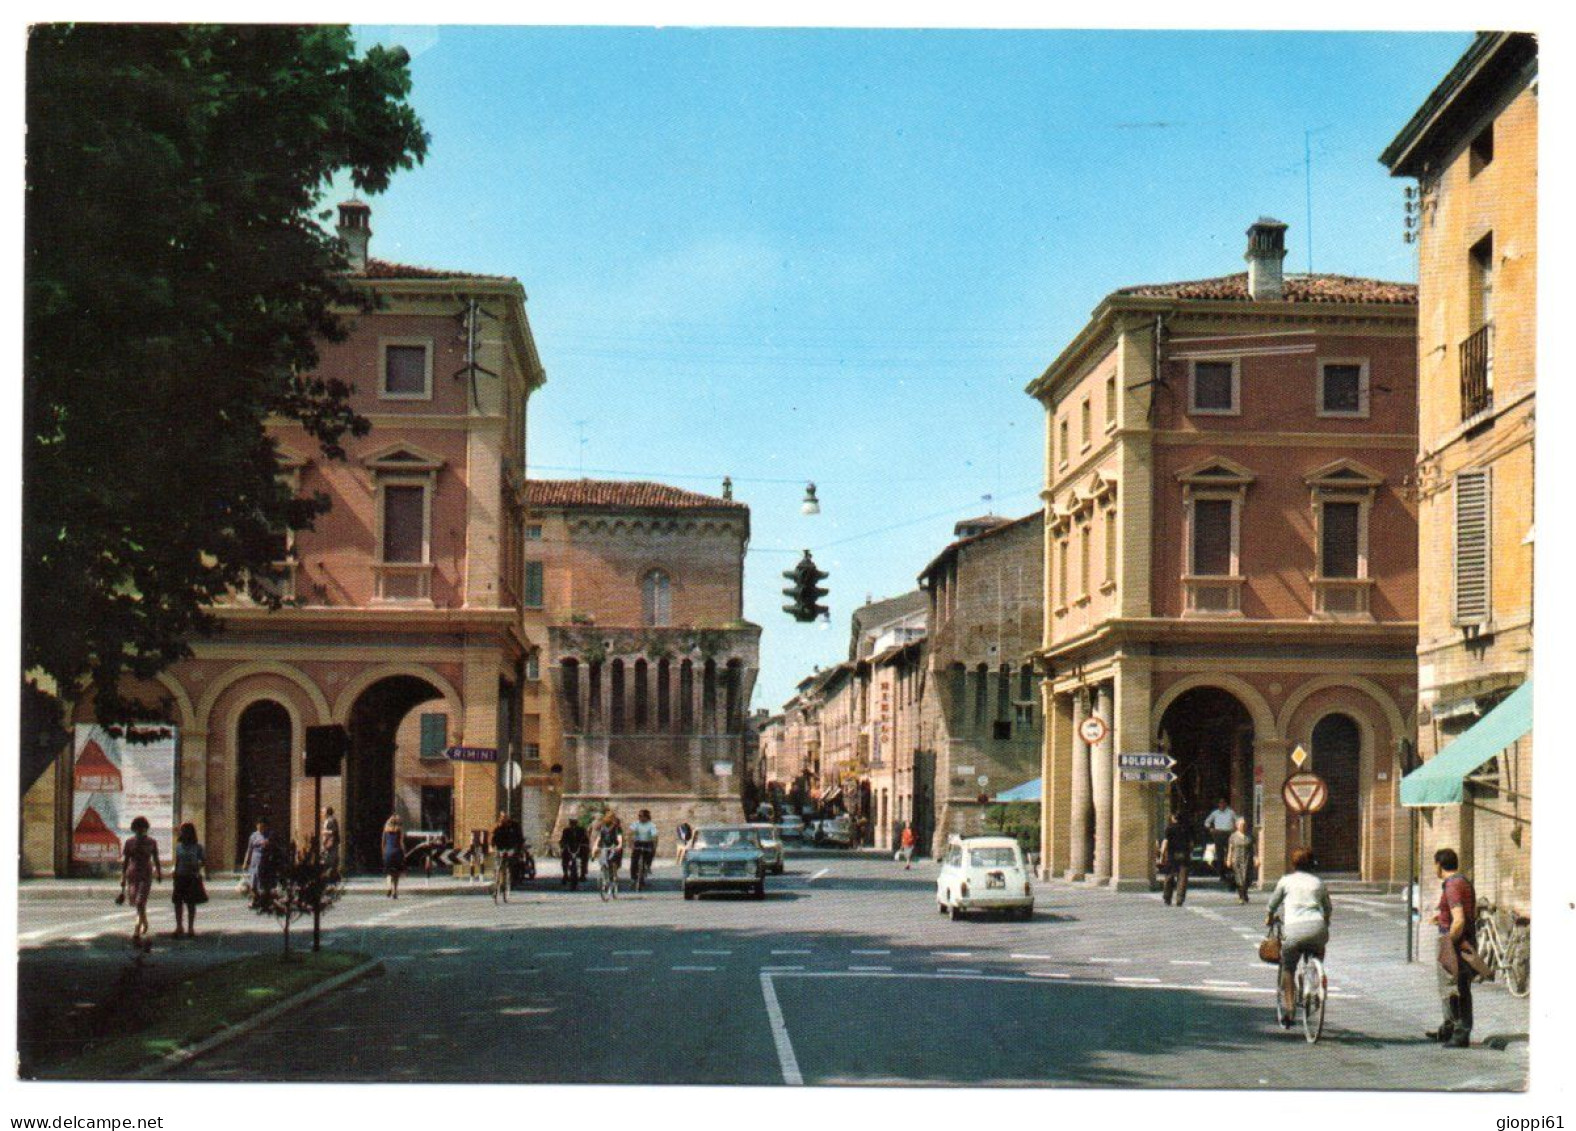 Imola - Porta Appia - Imola